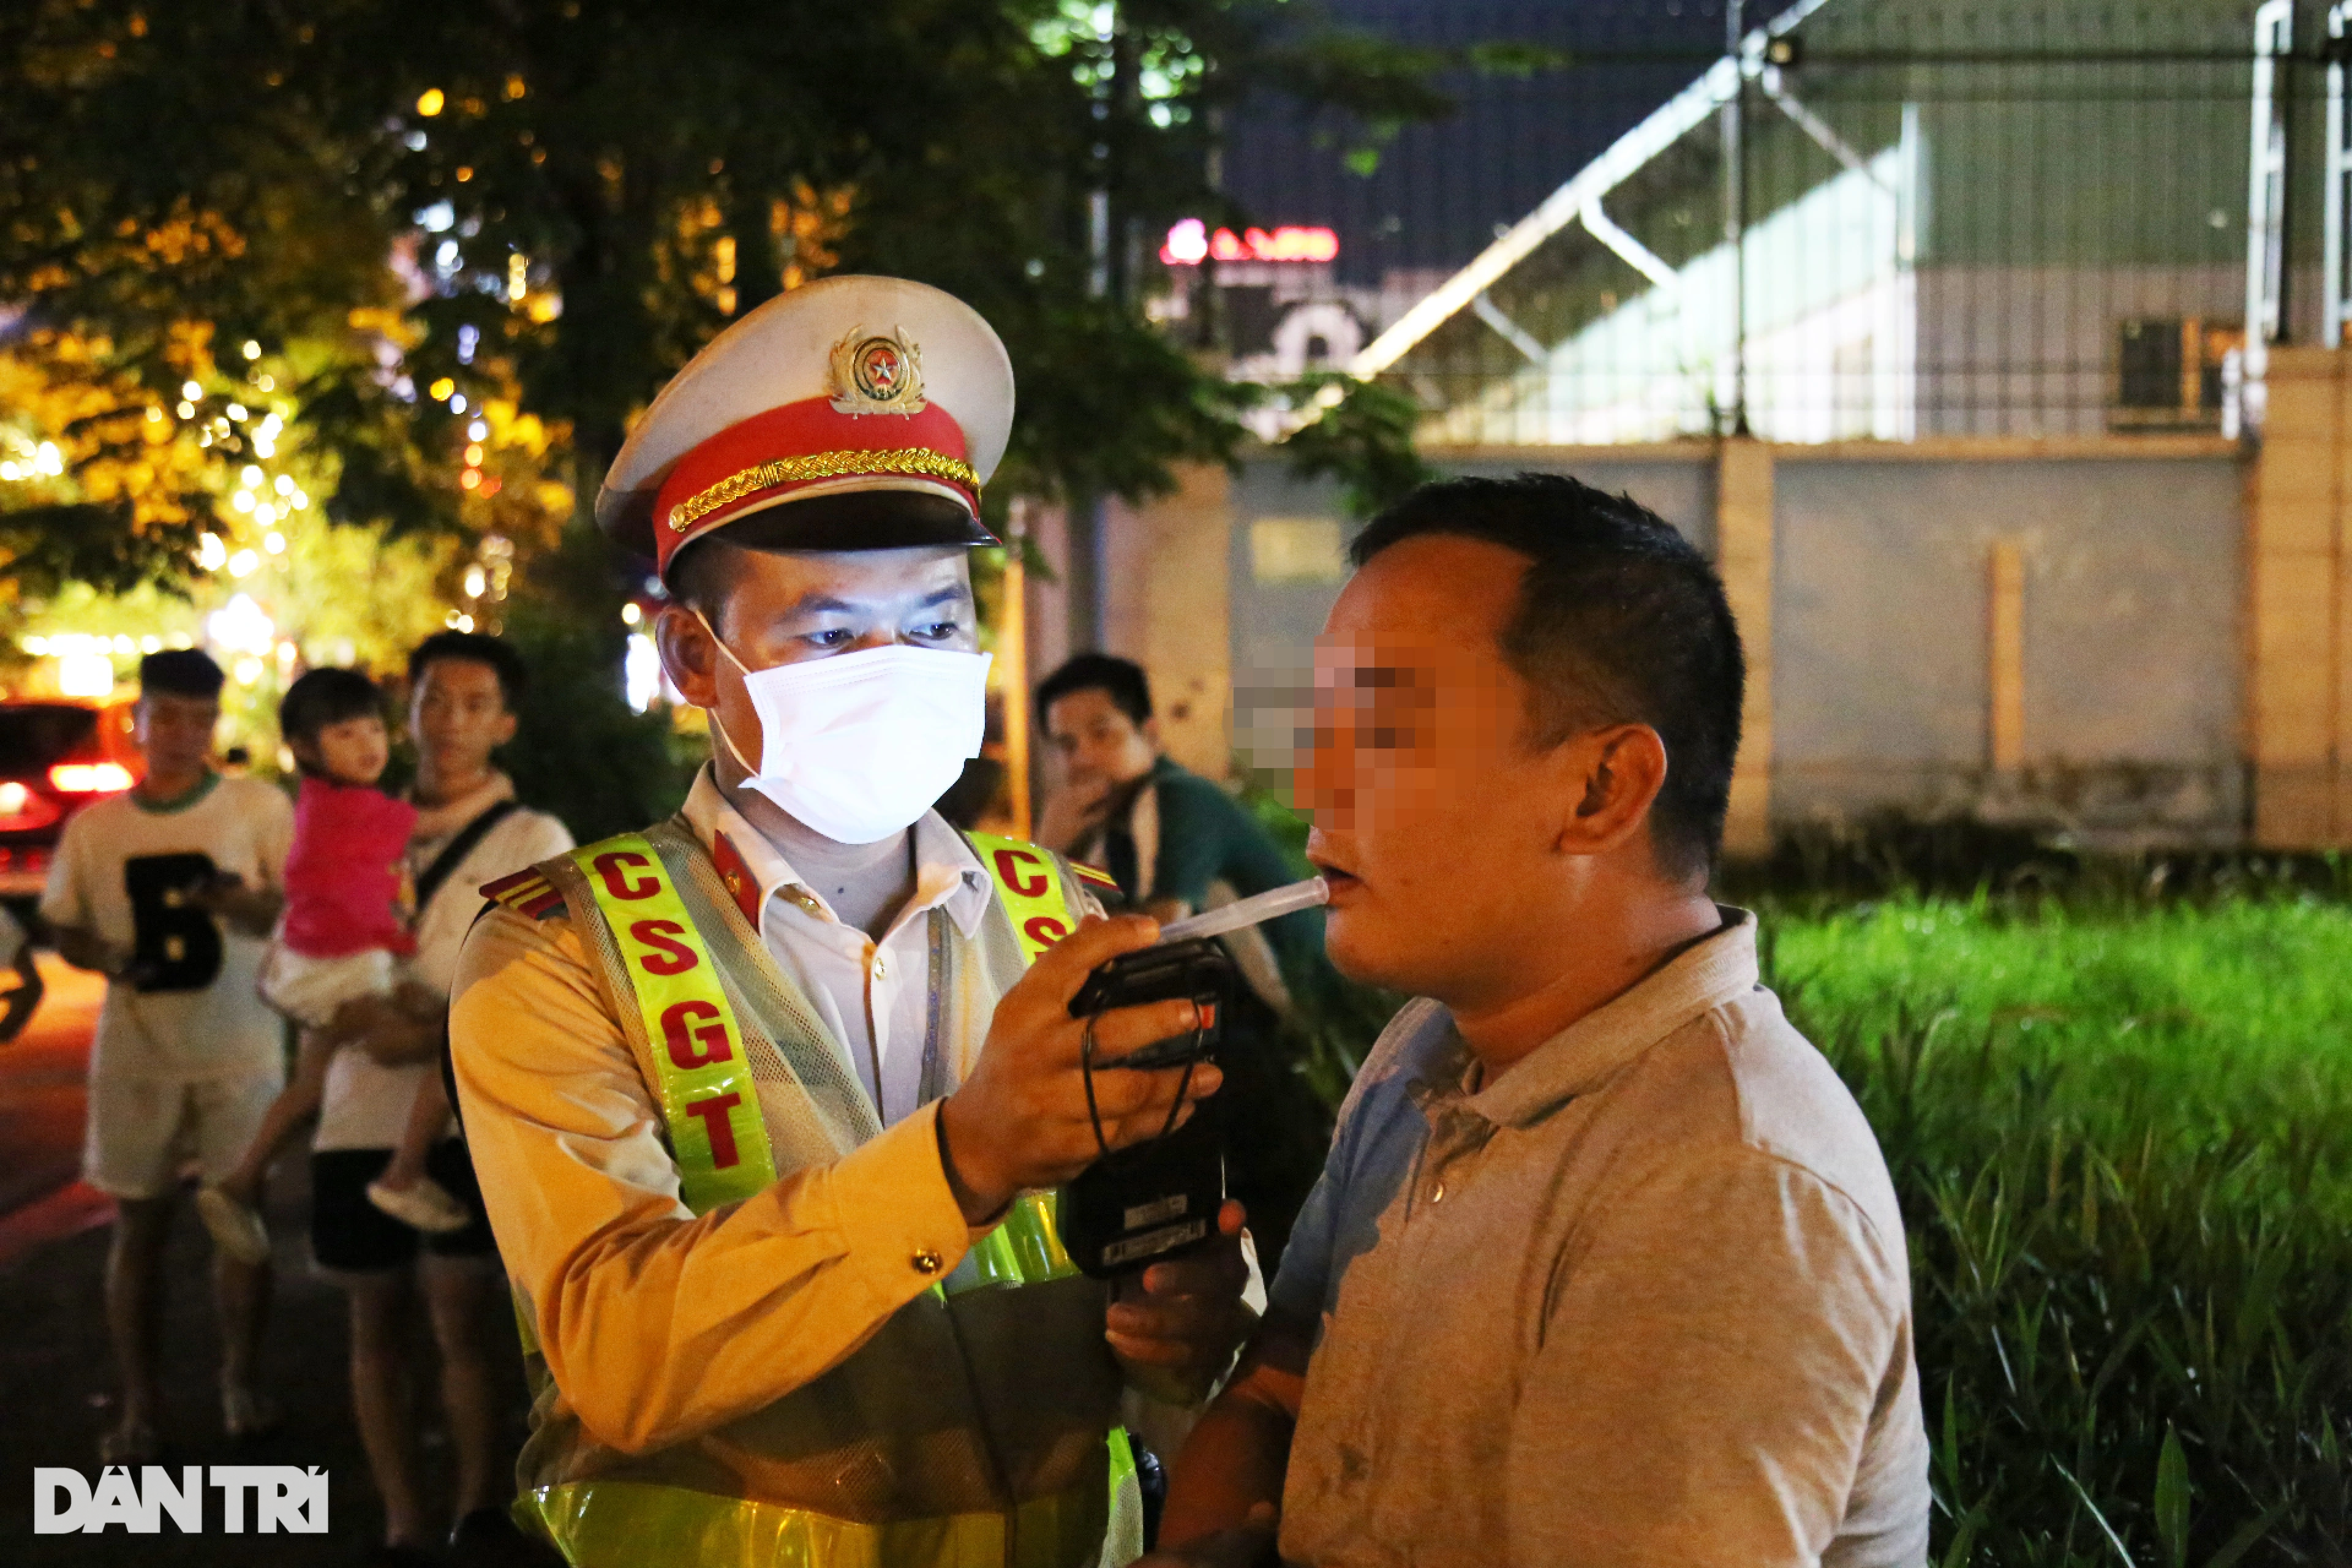 Hà Nội: CSGT hóa trang gần quán nhậu, xử lý ma men lái ô tô - 6